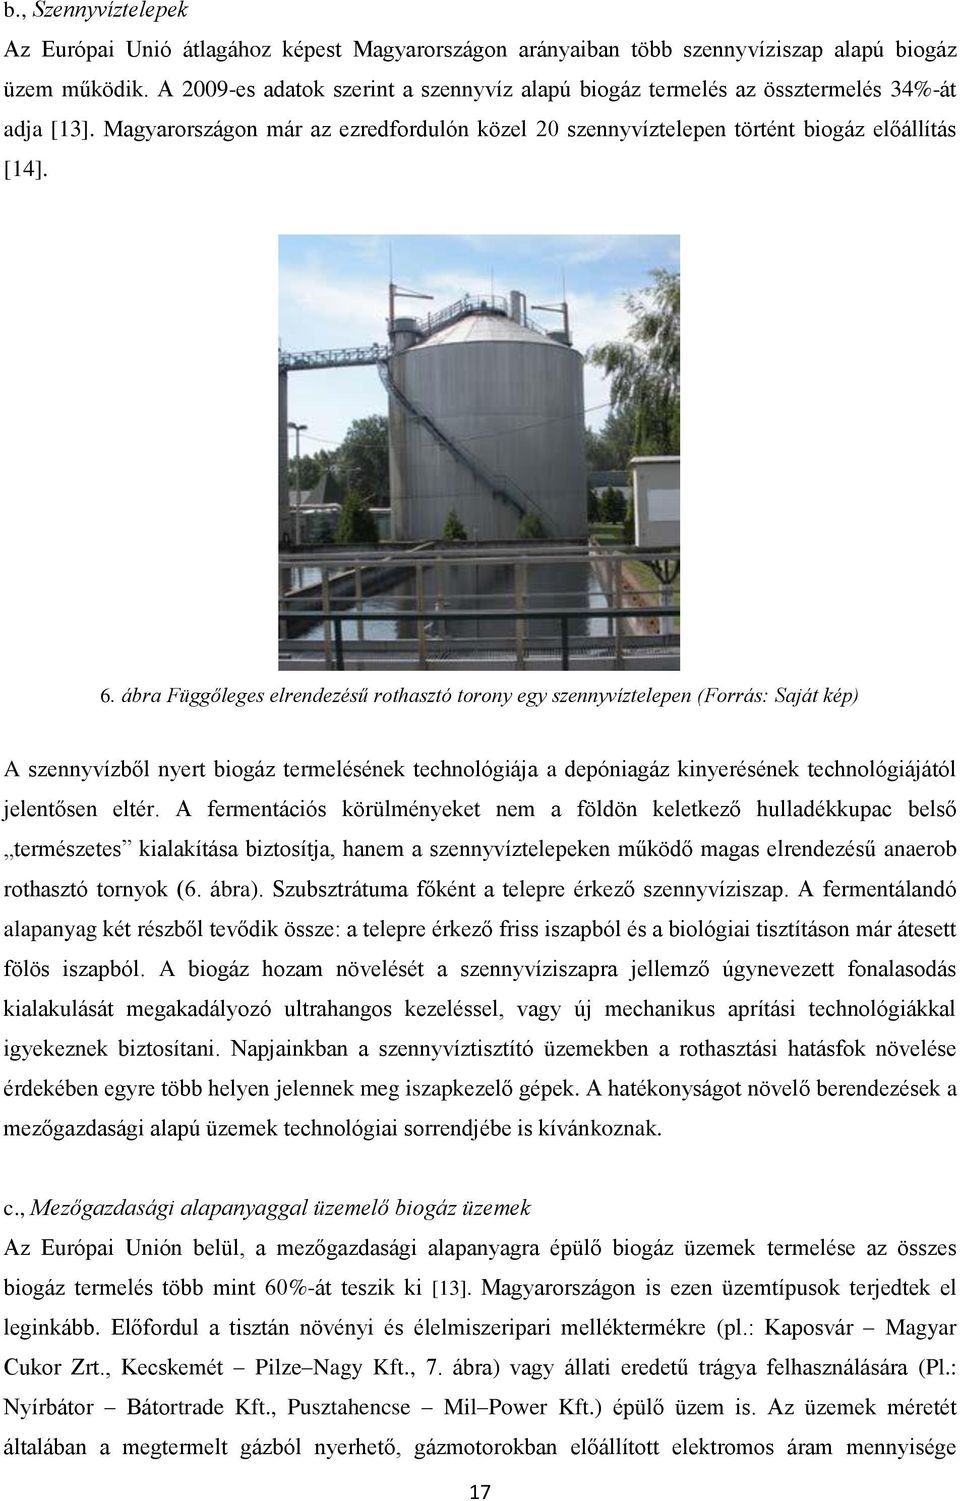 ábra Függőleges elrendezésű rothasztó torony egy szennyvíztelepen (Forrás: Saját kép) A szennyvízből nyert biogáz termelésének technológiája a depóniagáz kinyerésének technológiájától jelentősen